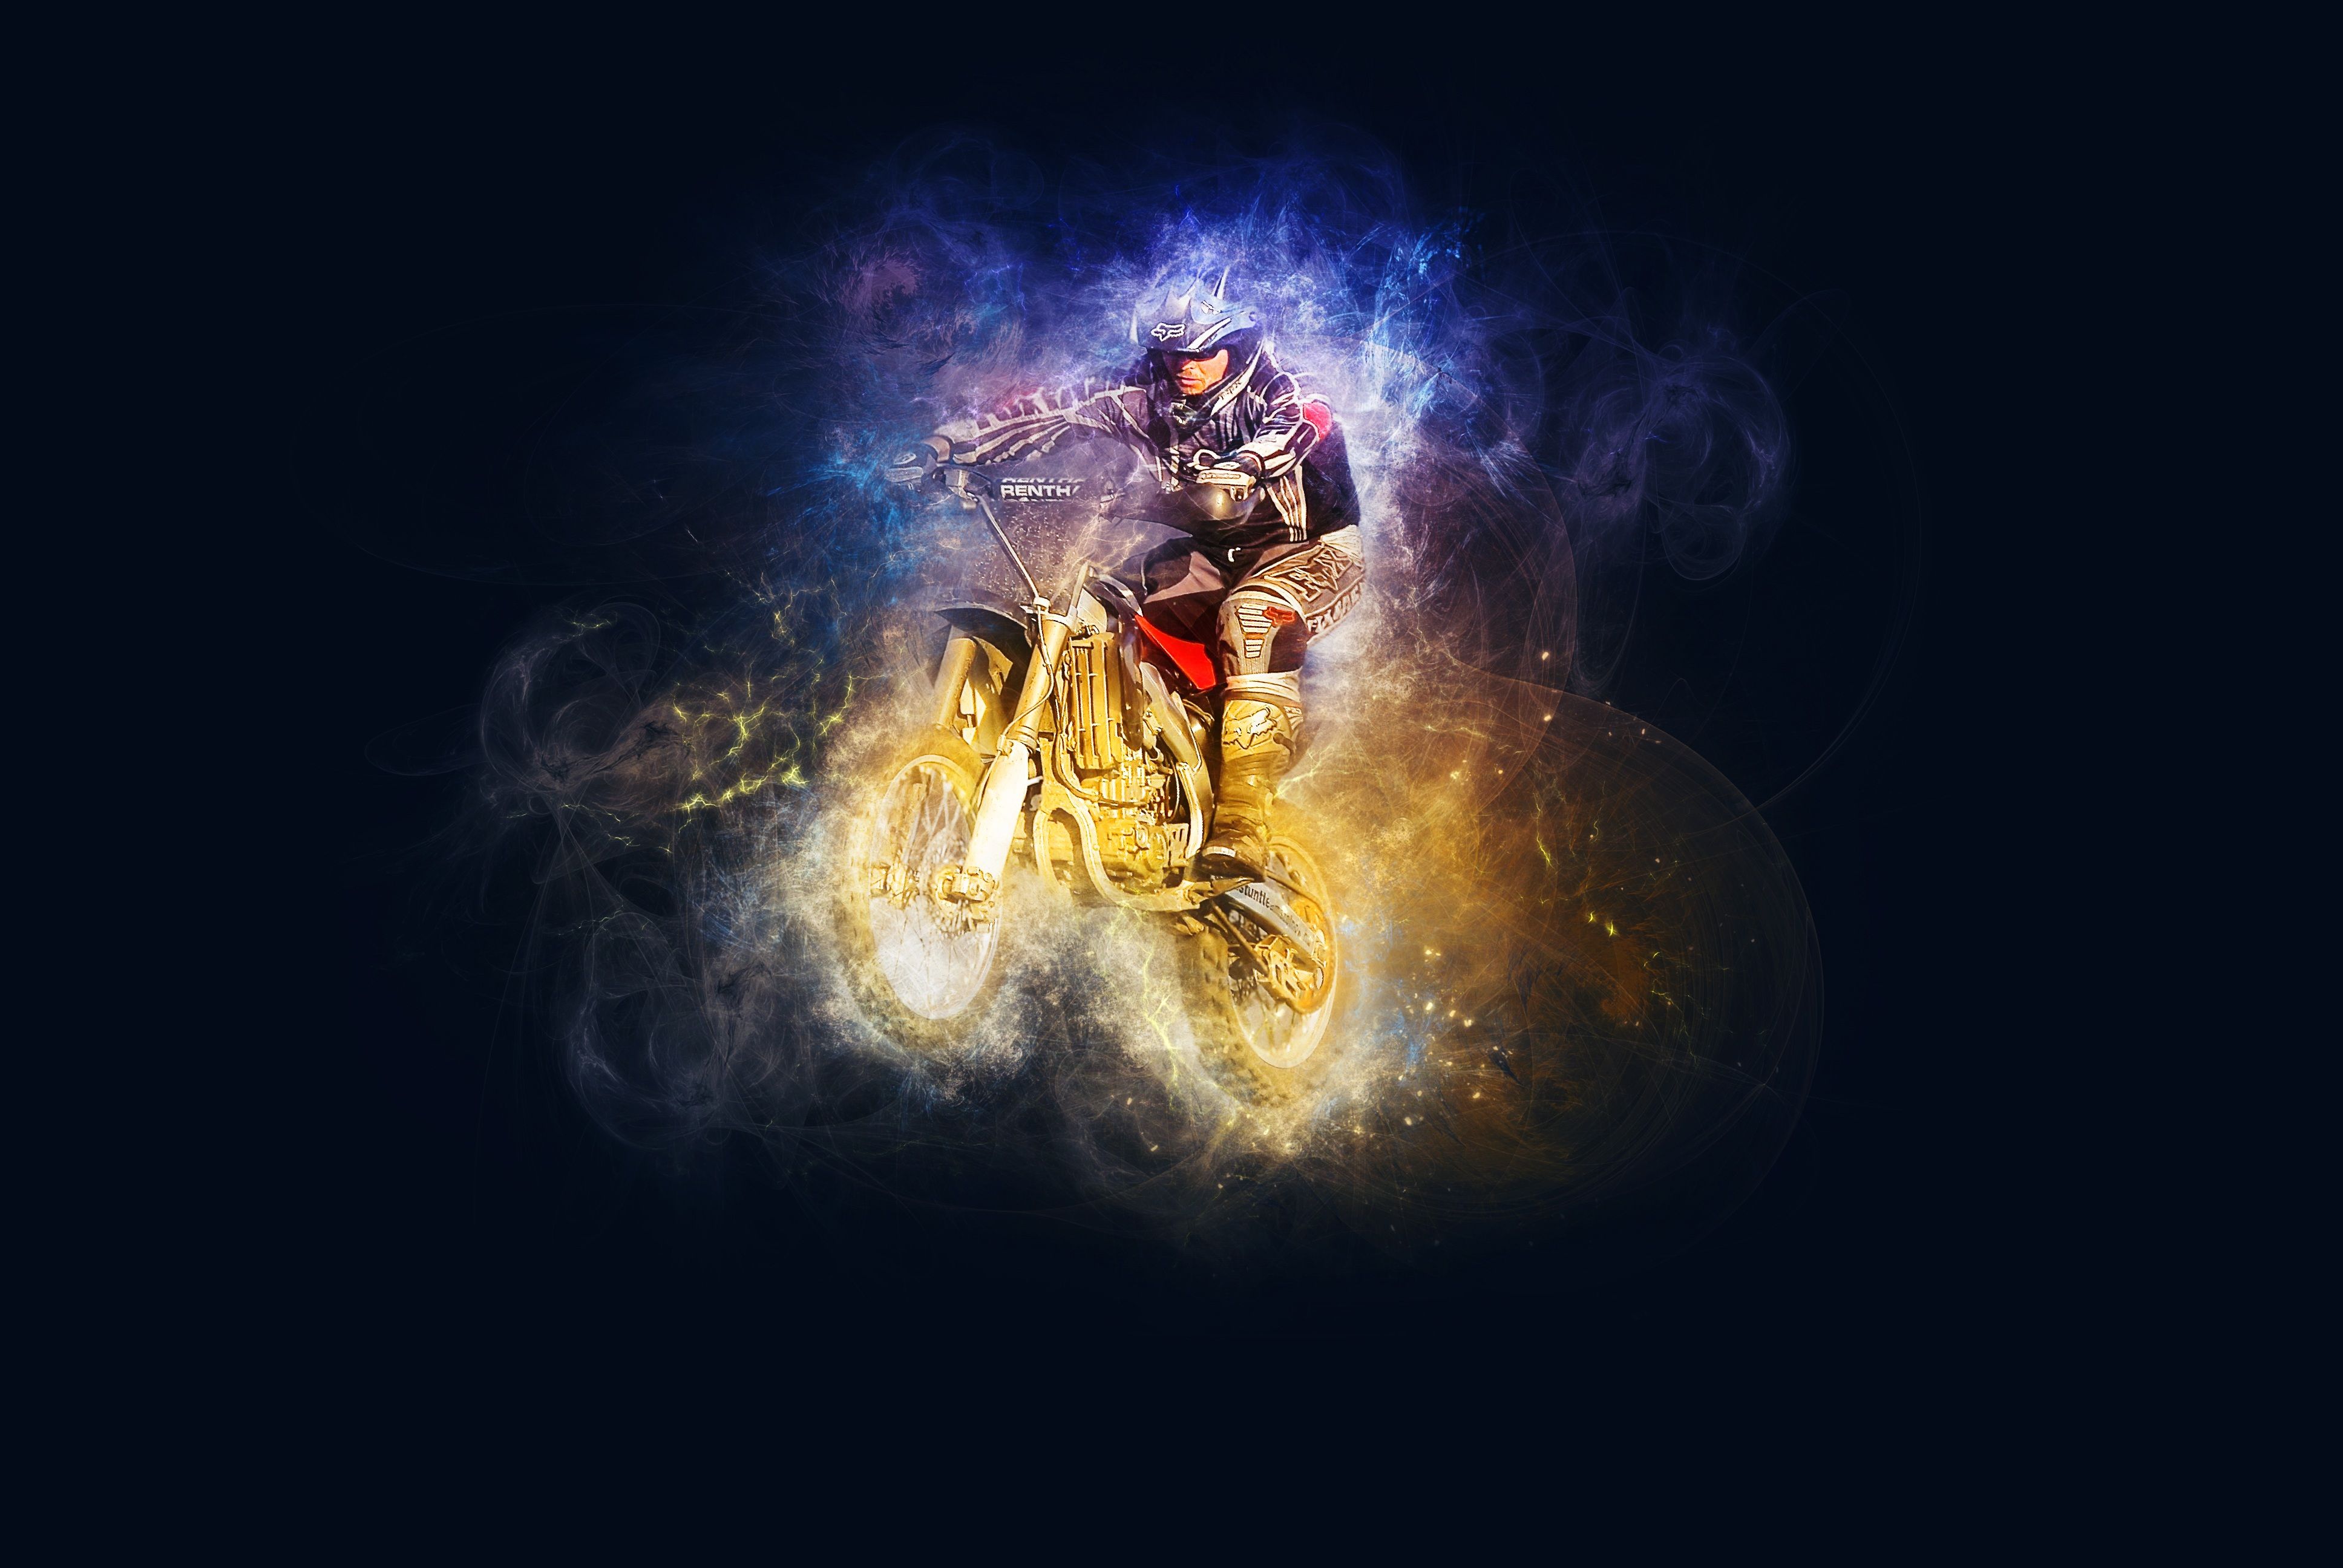 Motocross Riding 4K UHD Wallpaper